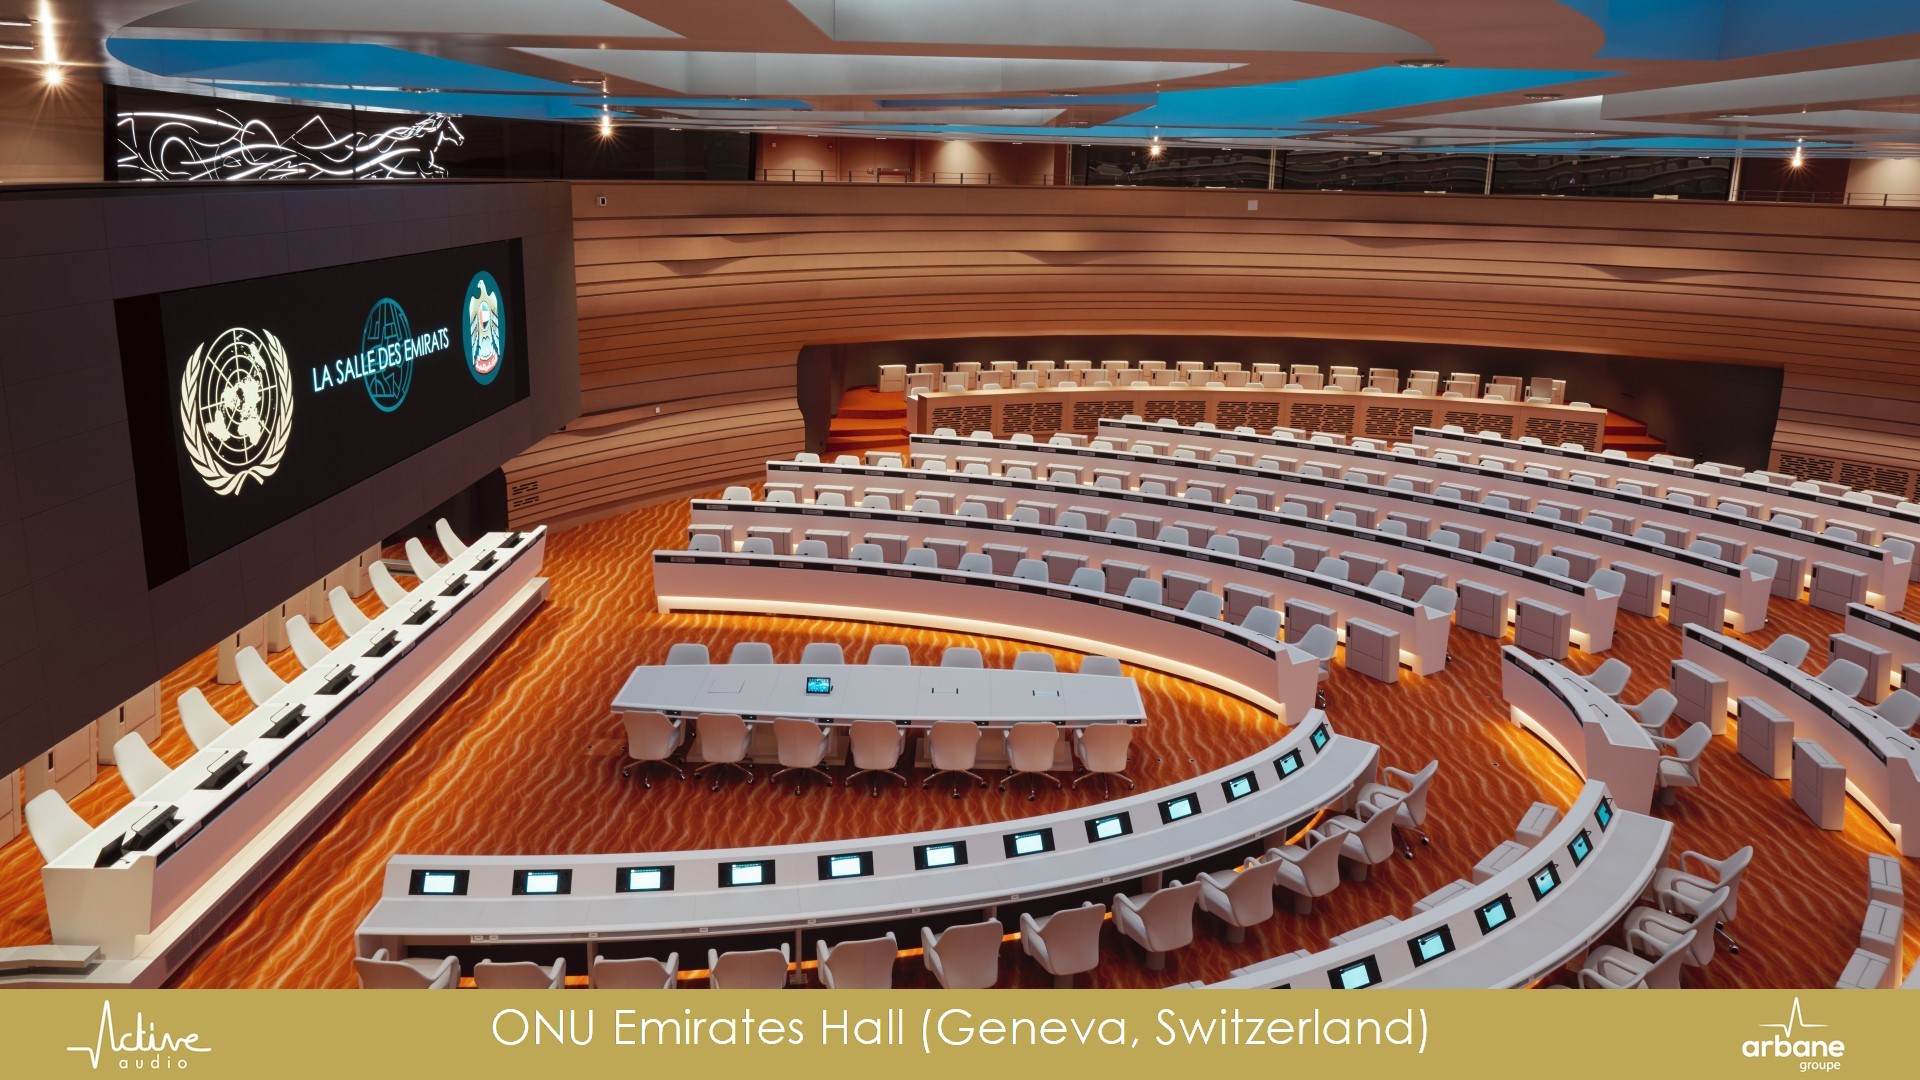 Salle des Emirats, Siège de l'ONU, Genève, Suisse